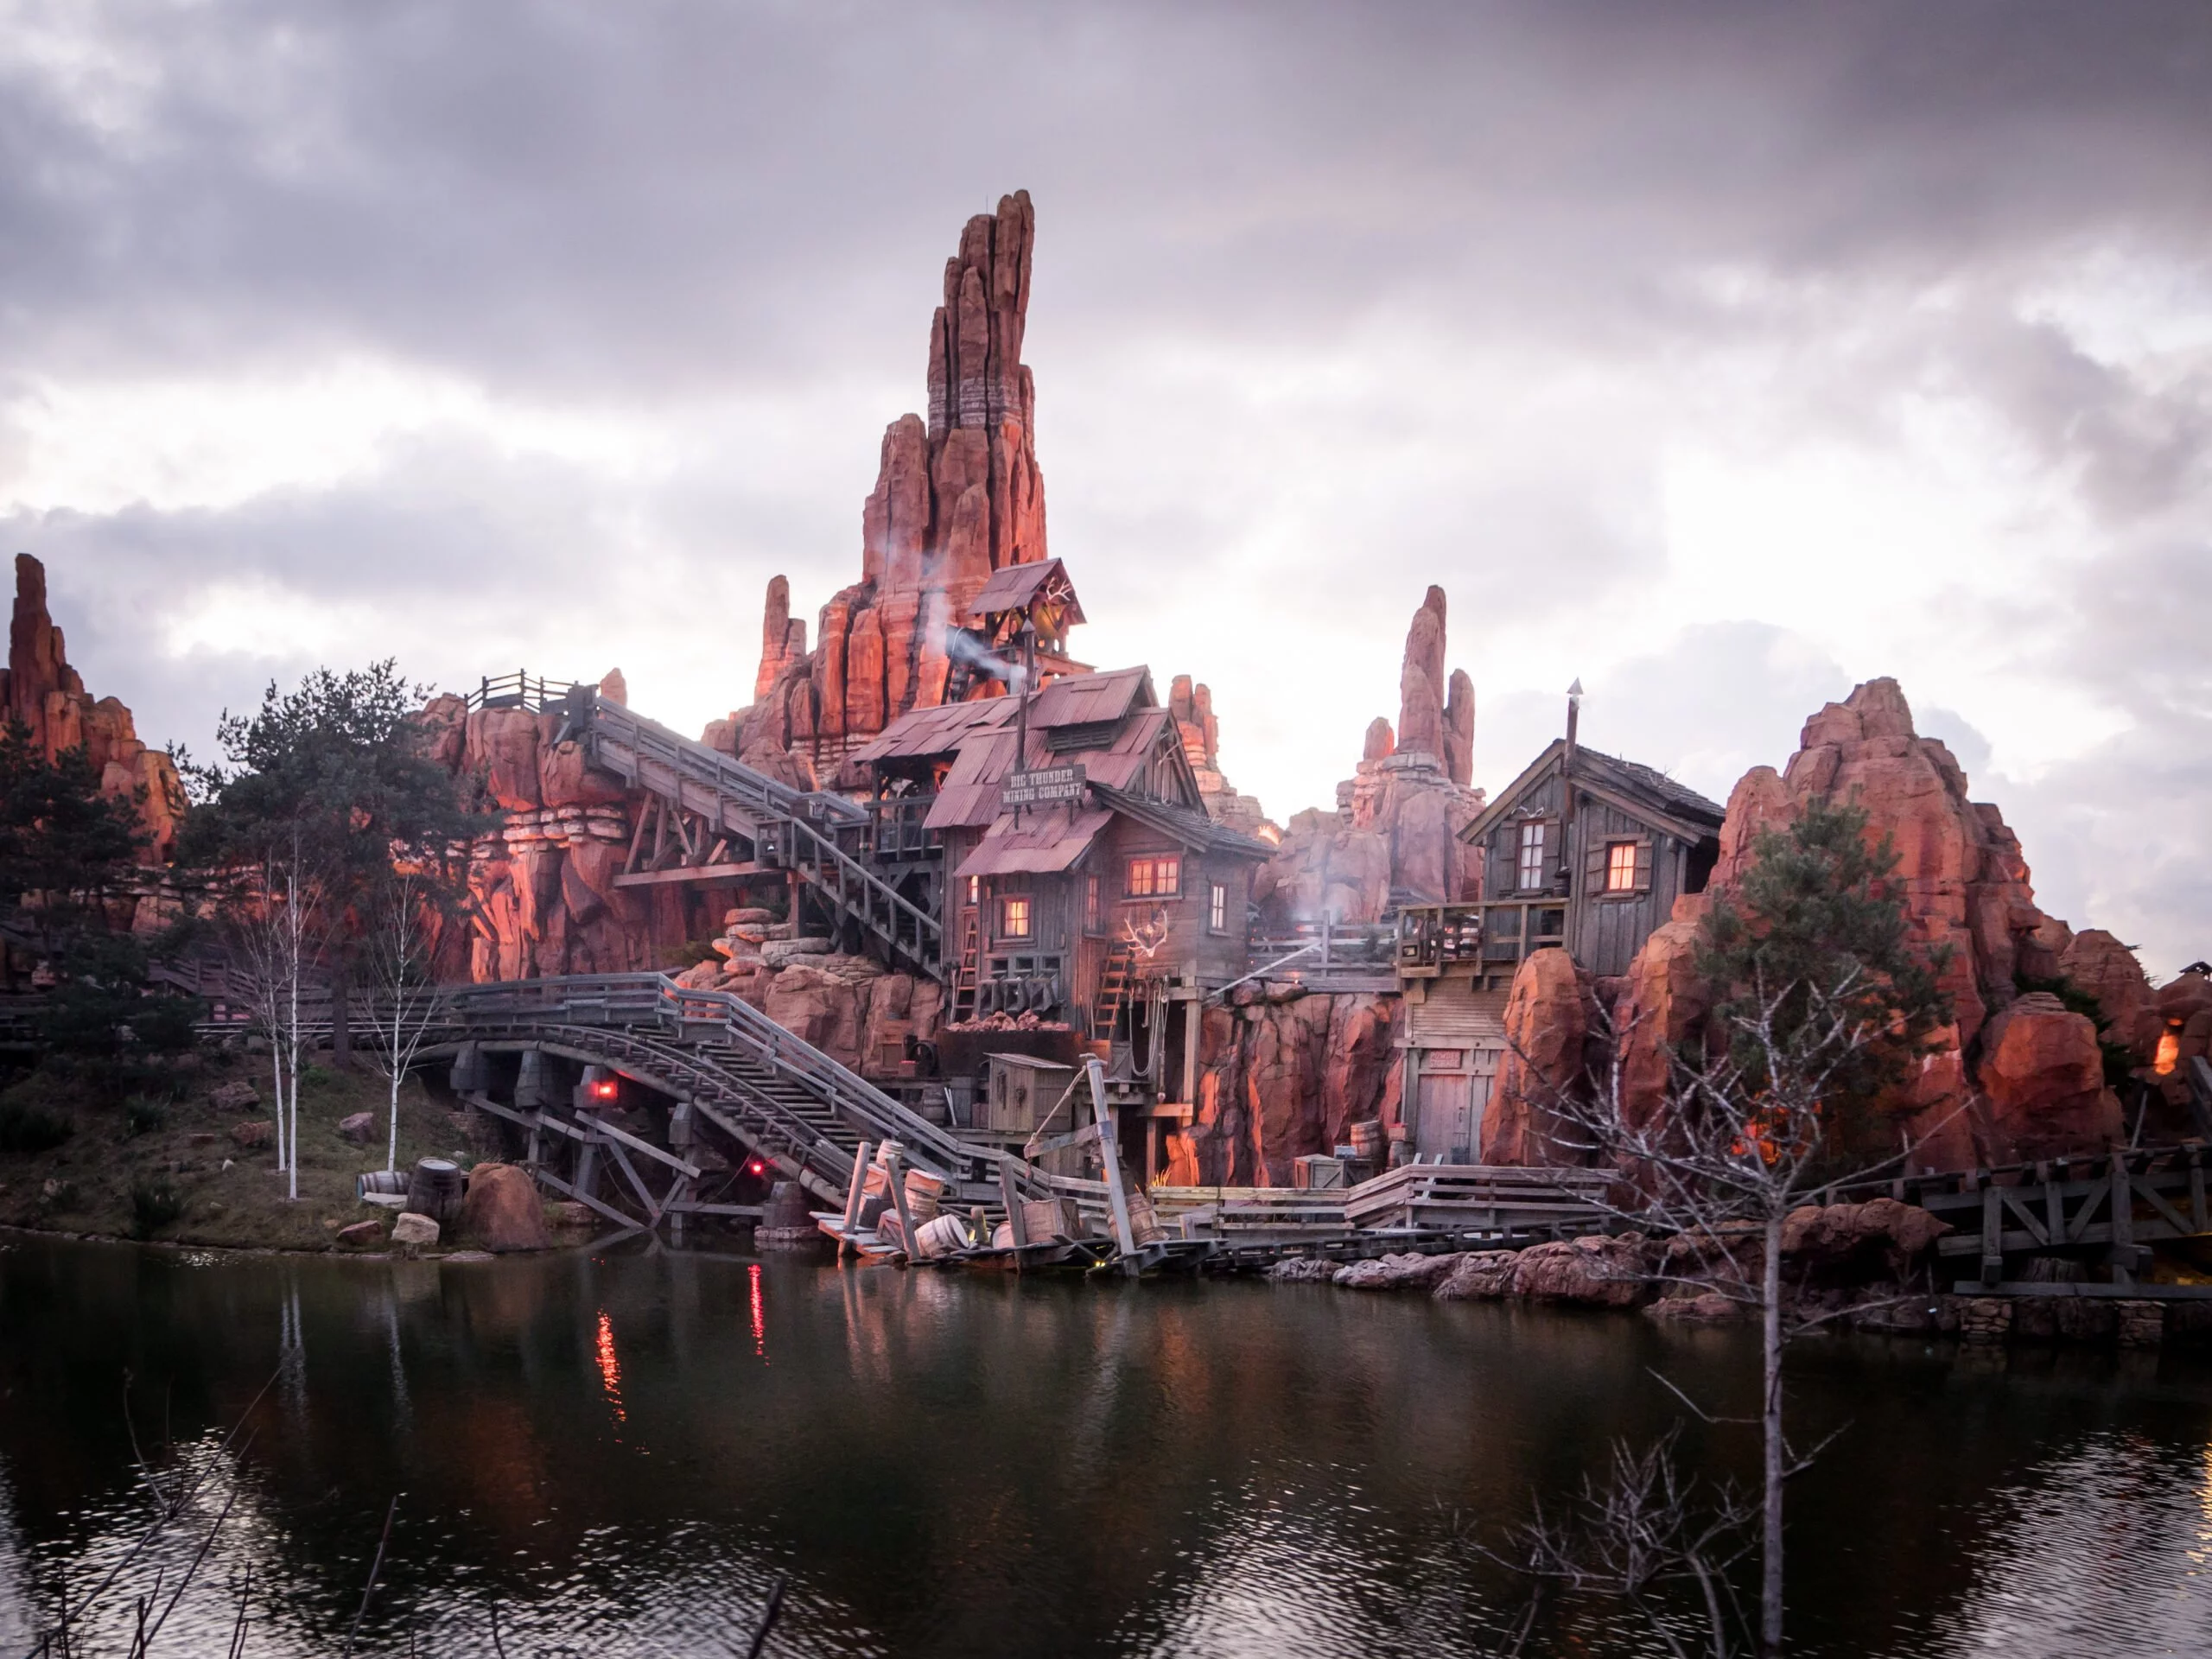 Une vue panoramique d'un paysage montagneux et accidenté avec un village en bois et des ponts au crépuscule, se reflétant dans un lac tranquille en contrebas, rappelant Disneyland Paris.